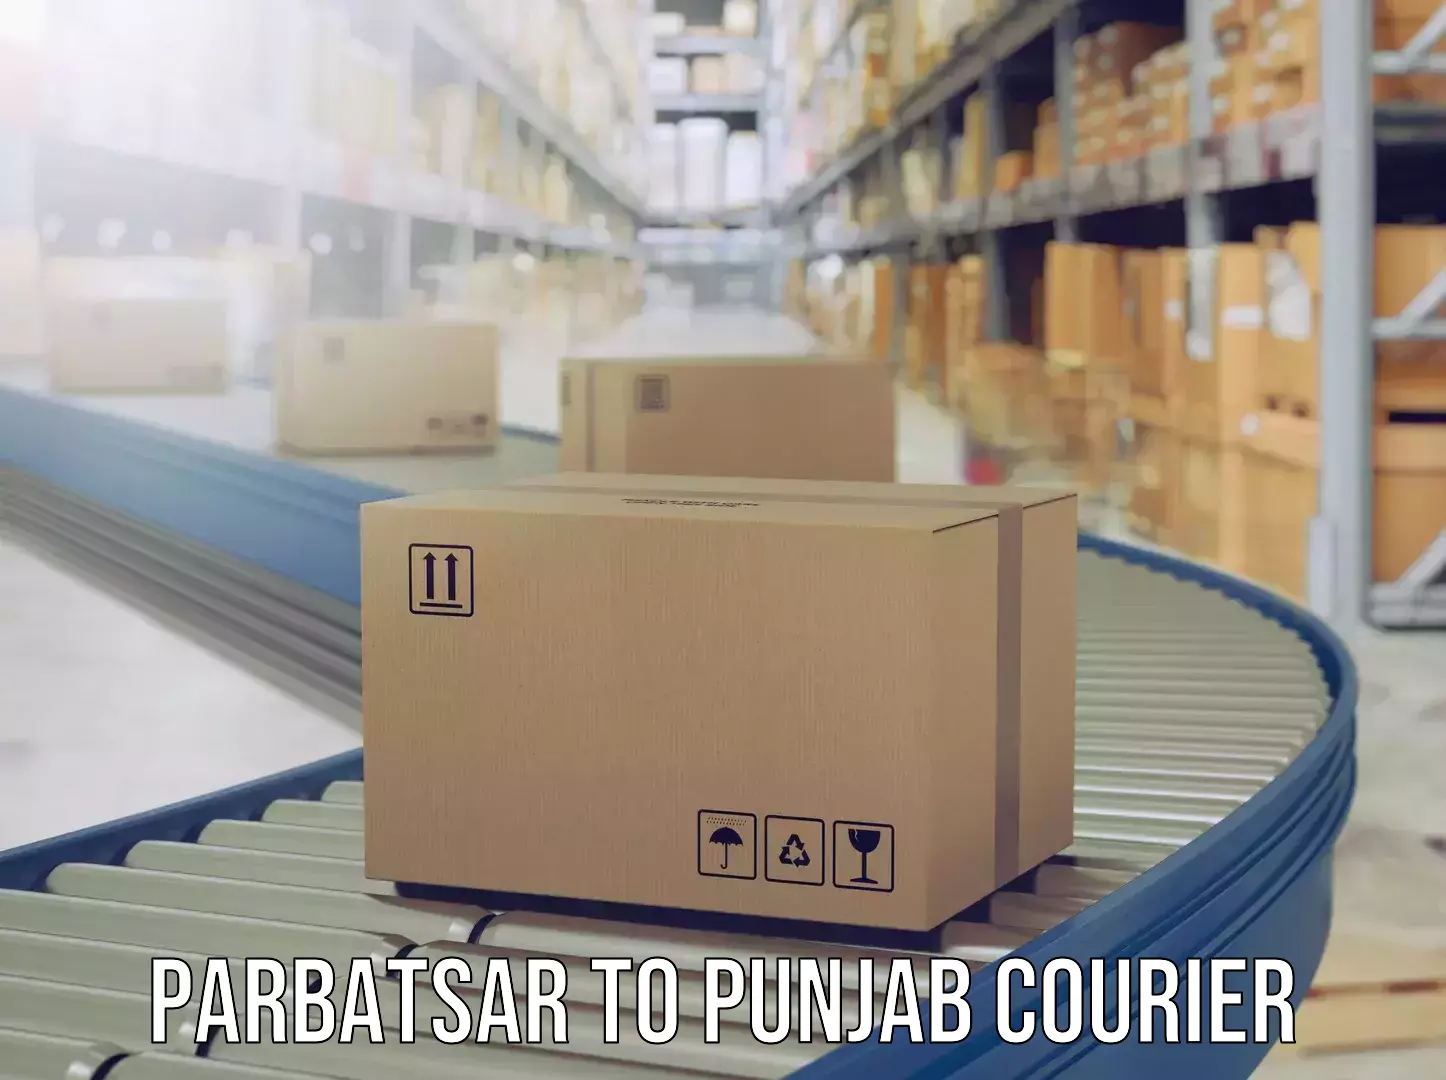 Digital baggage courier Parbatsar to Punjab